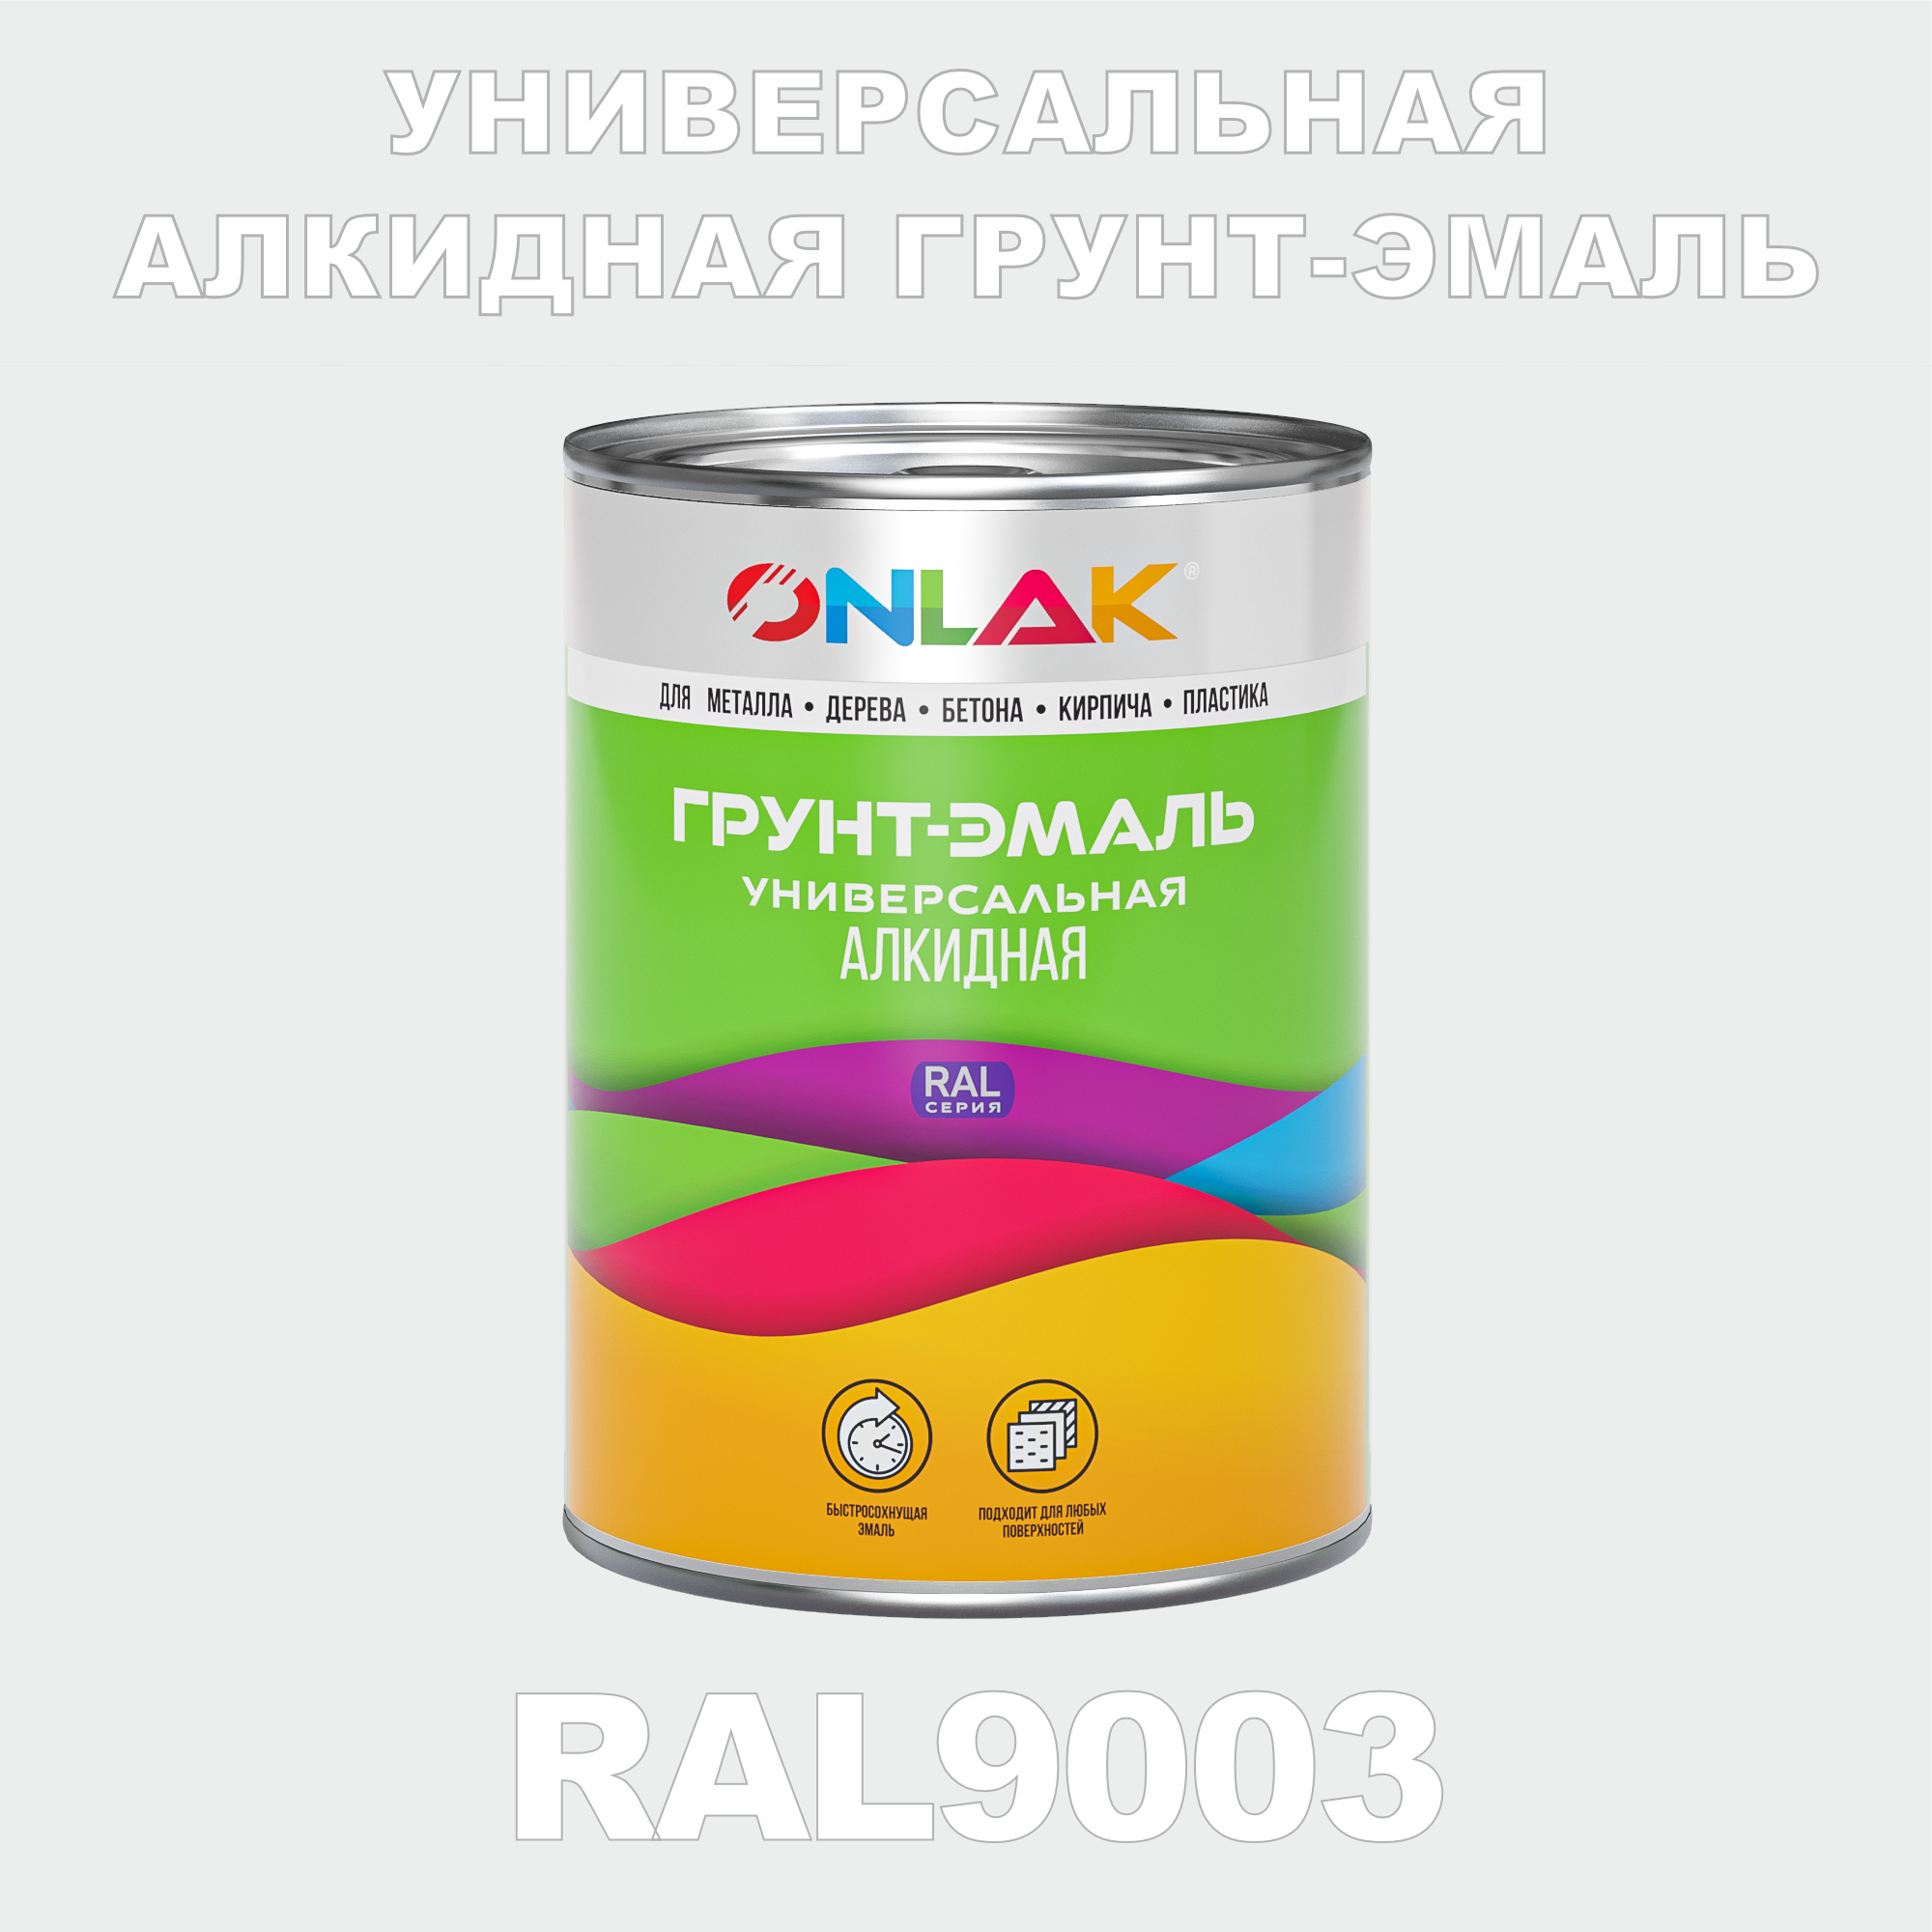 Грунт-эмаль ONLAK 1К RAL9003 антикоррозионная алкидная по металлу по ржавчине 1 кг грунт эмаль ореол титан по ржавчине алкидная зеленая ral 6005 0 9 кг